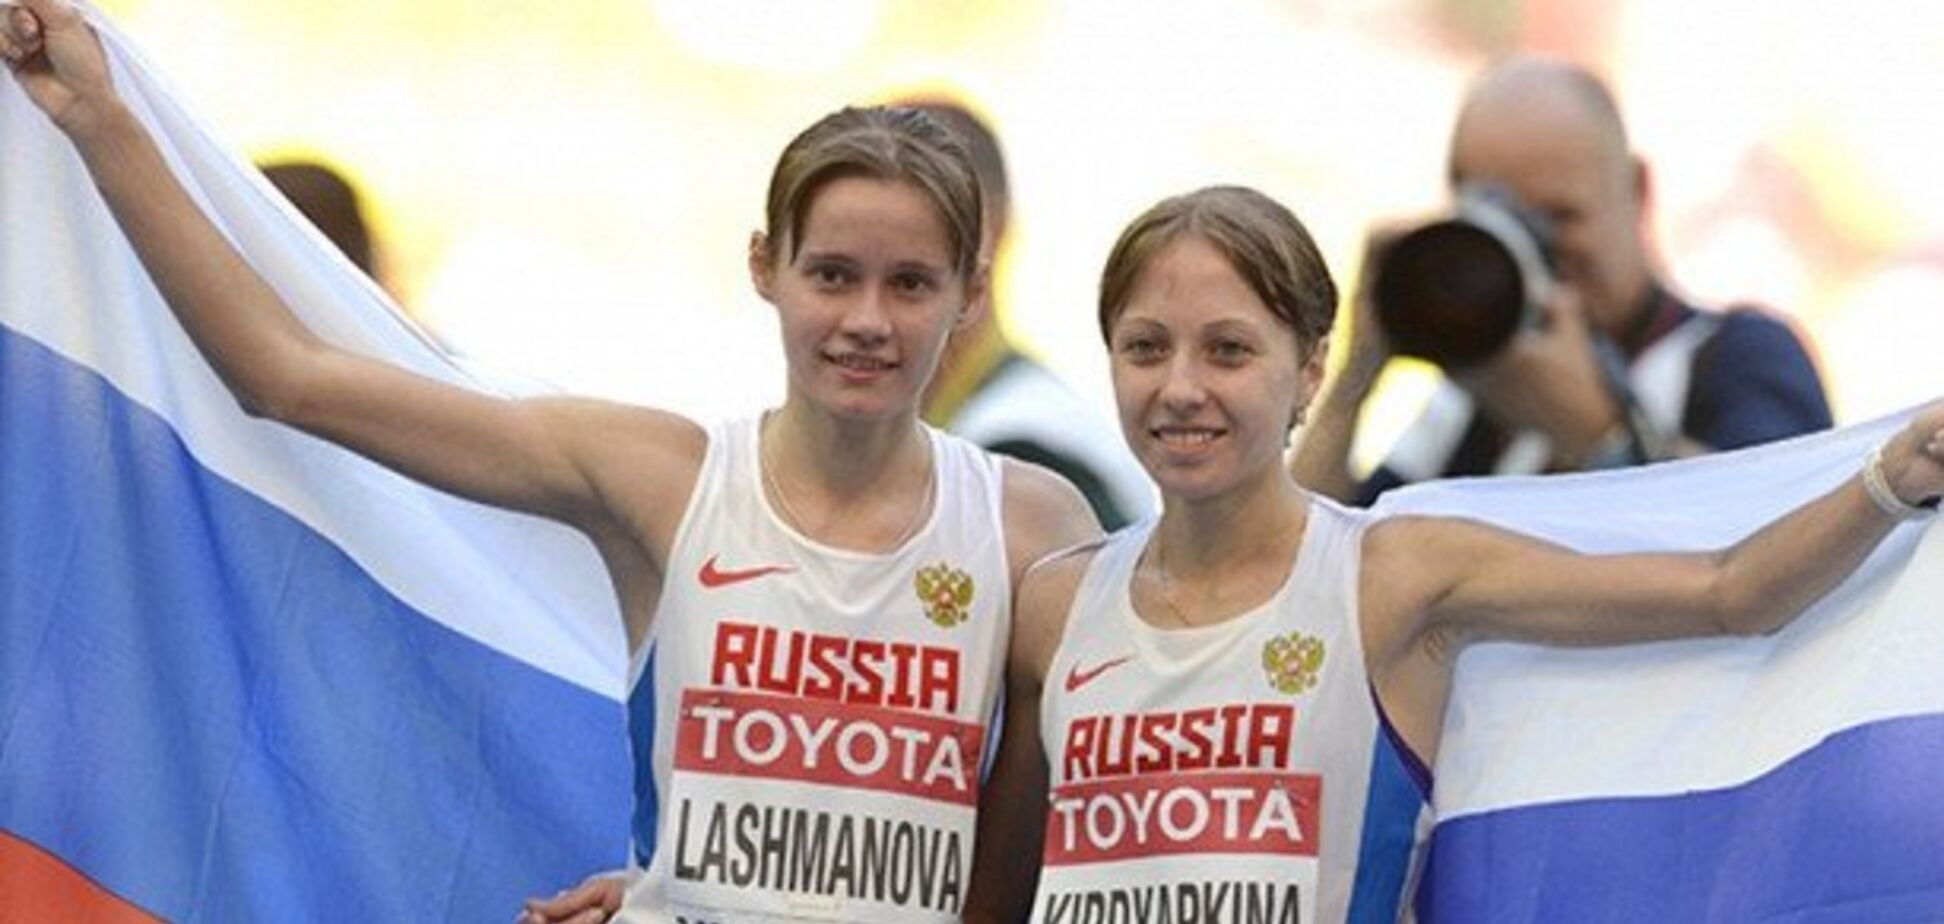 Пойманная на допинге чемпионка мира решила 'бросить' Россию